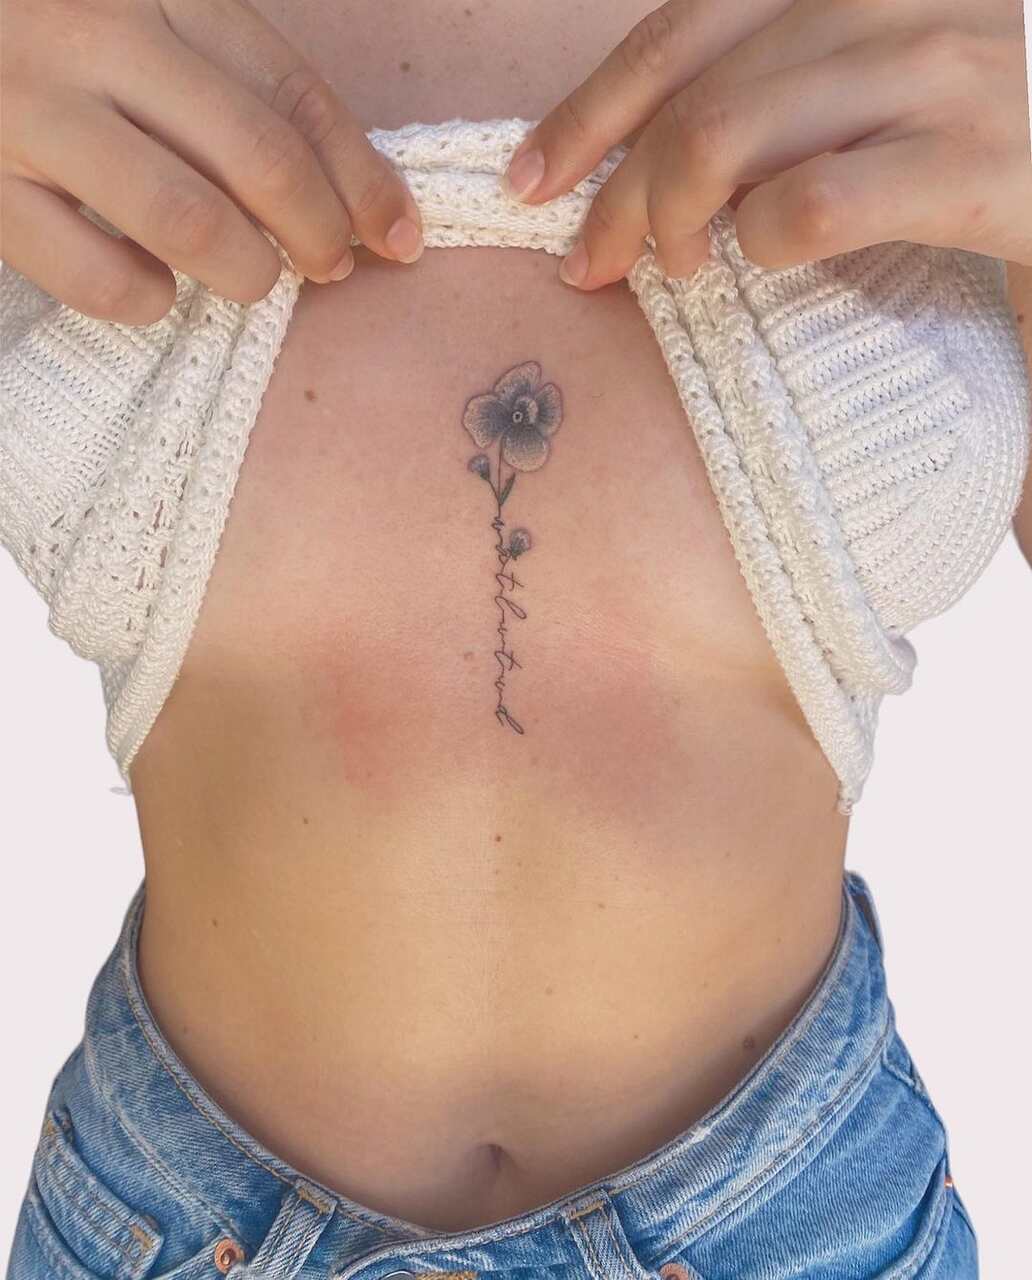 Tatuagem feminina para você se inspirar